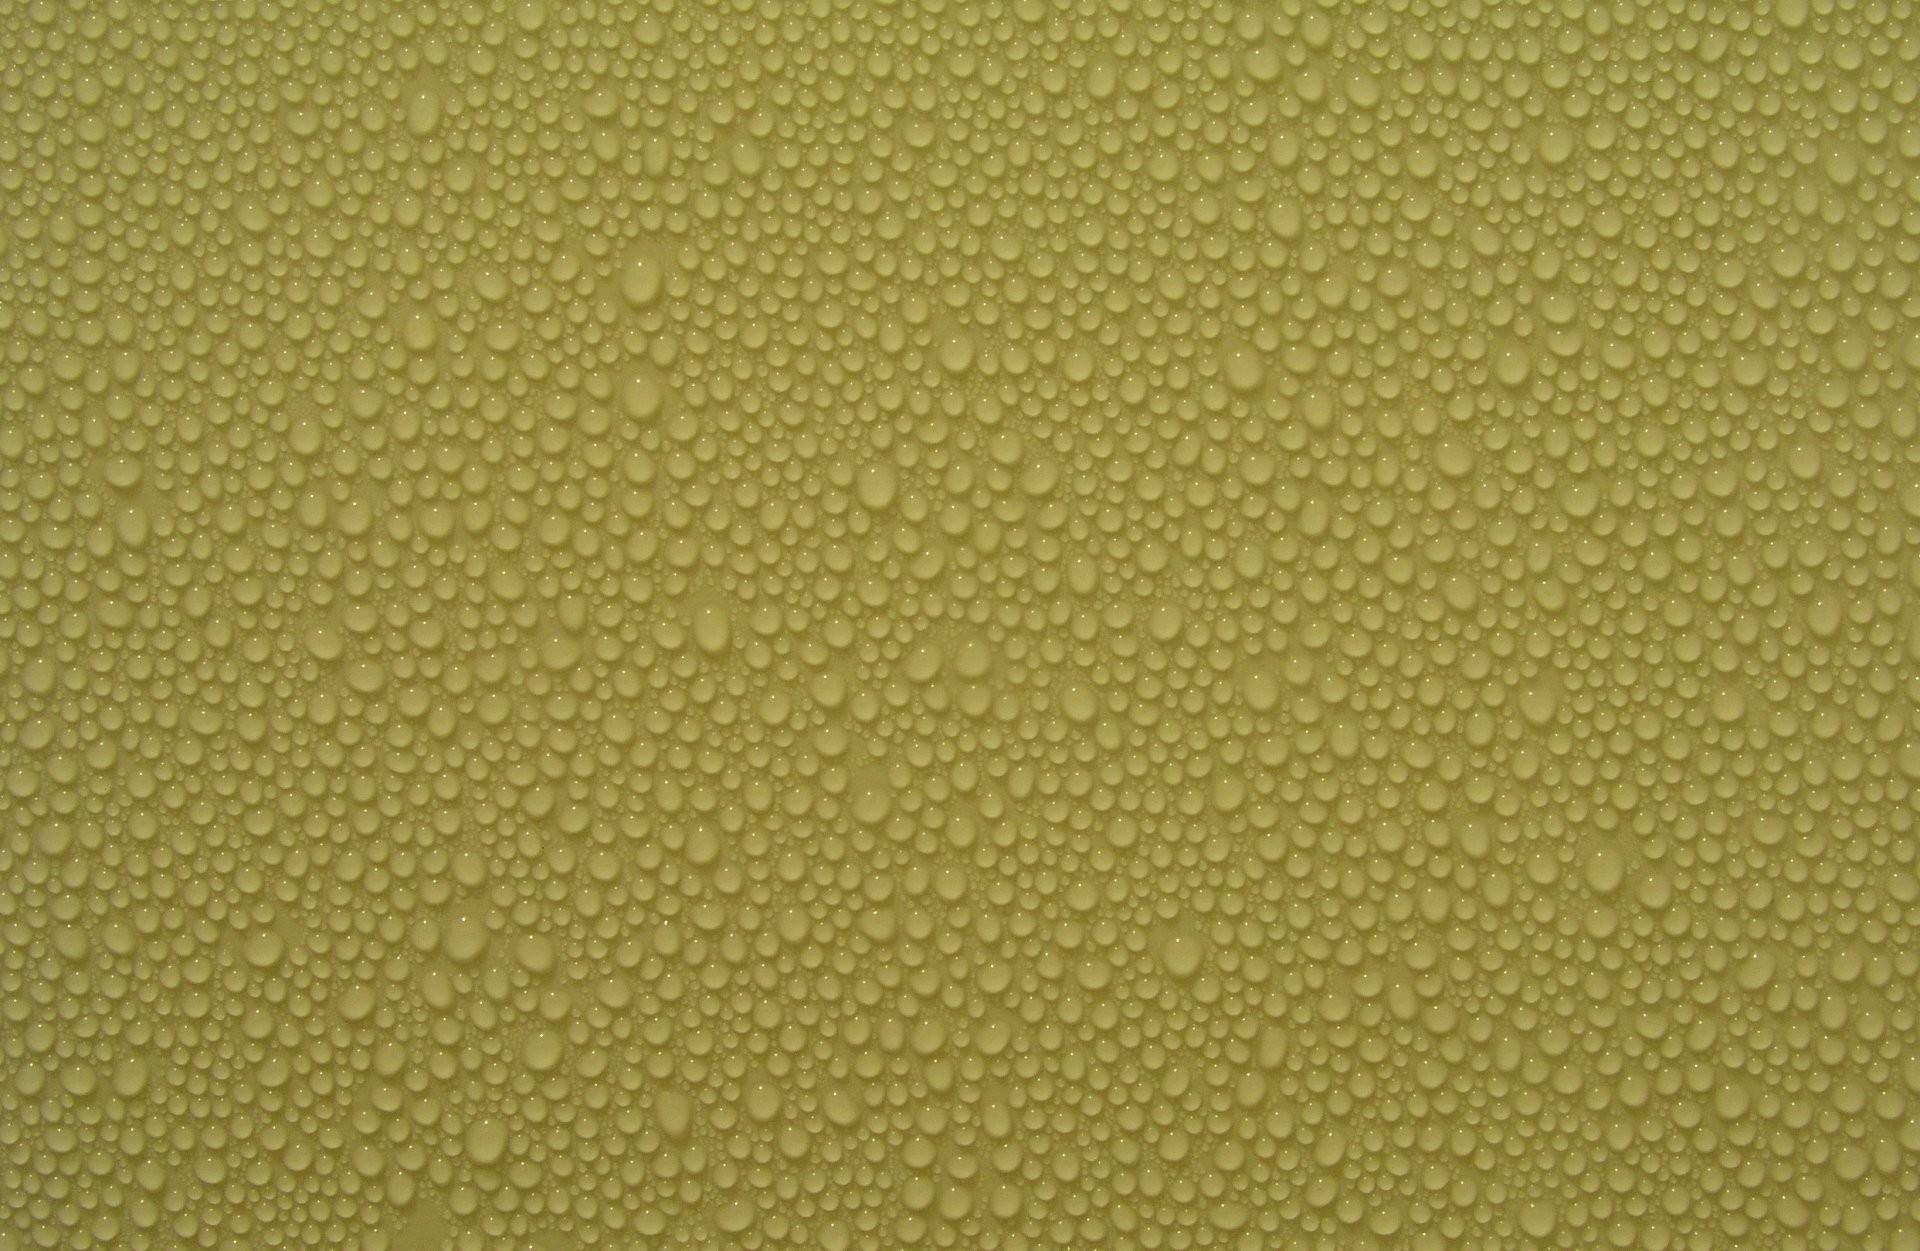 1920x1251 textures water drops texture water droplets desktop background